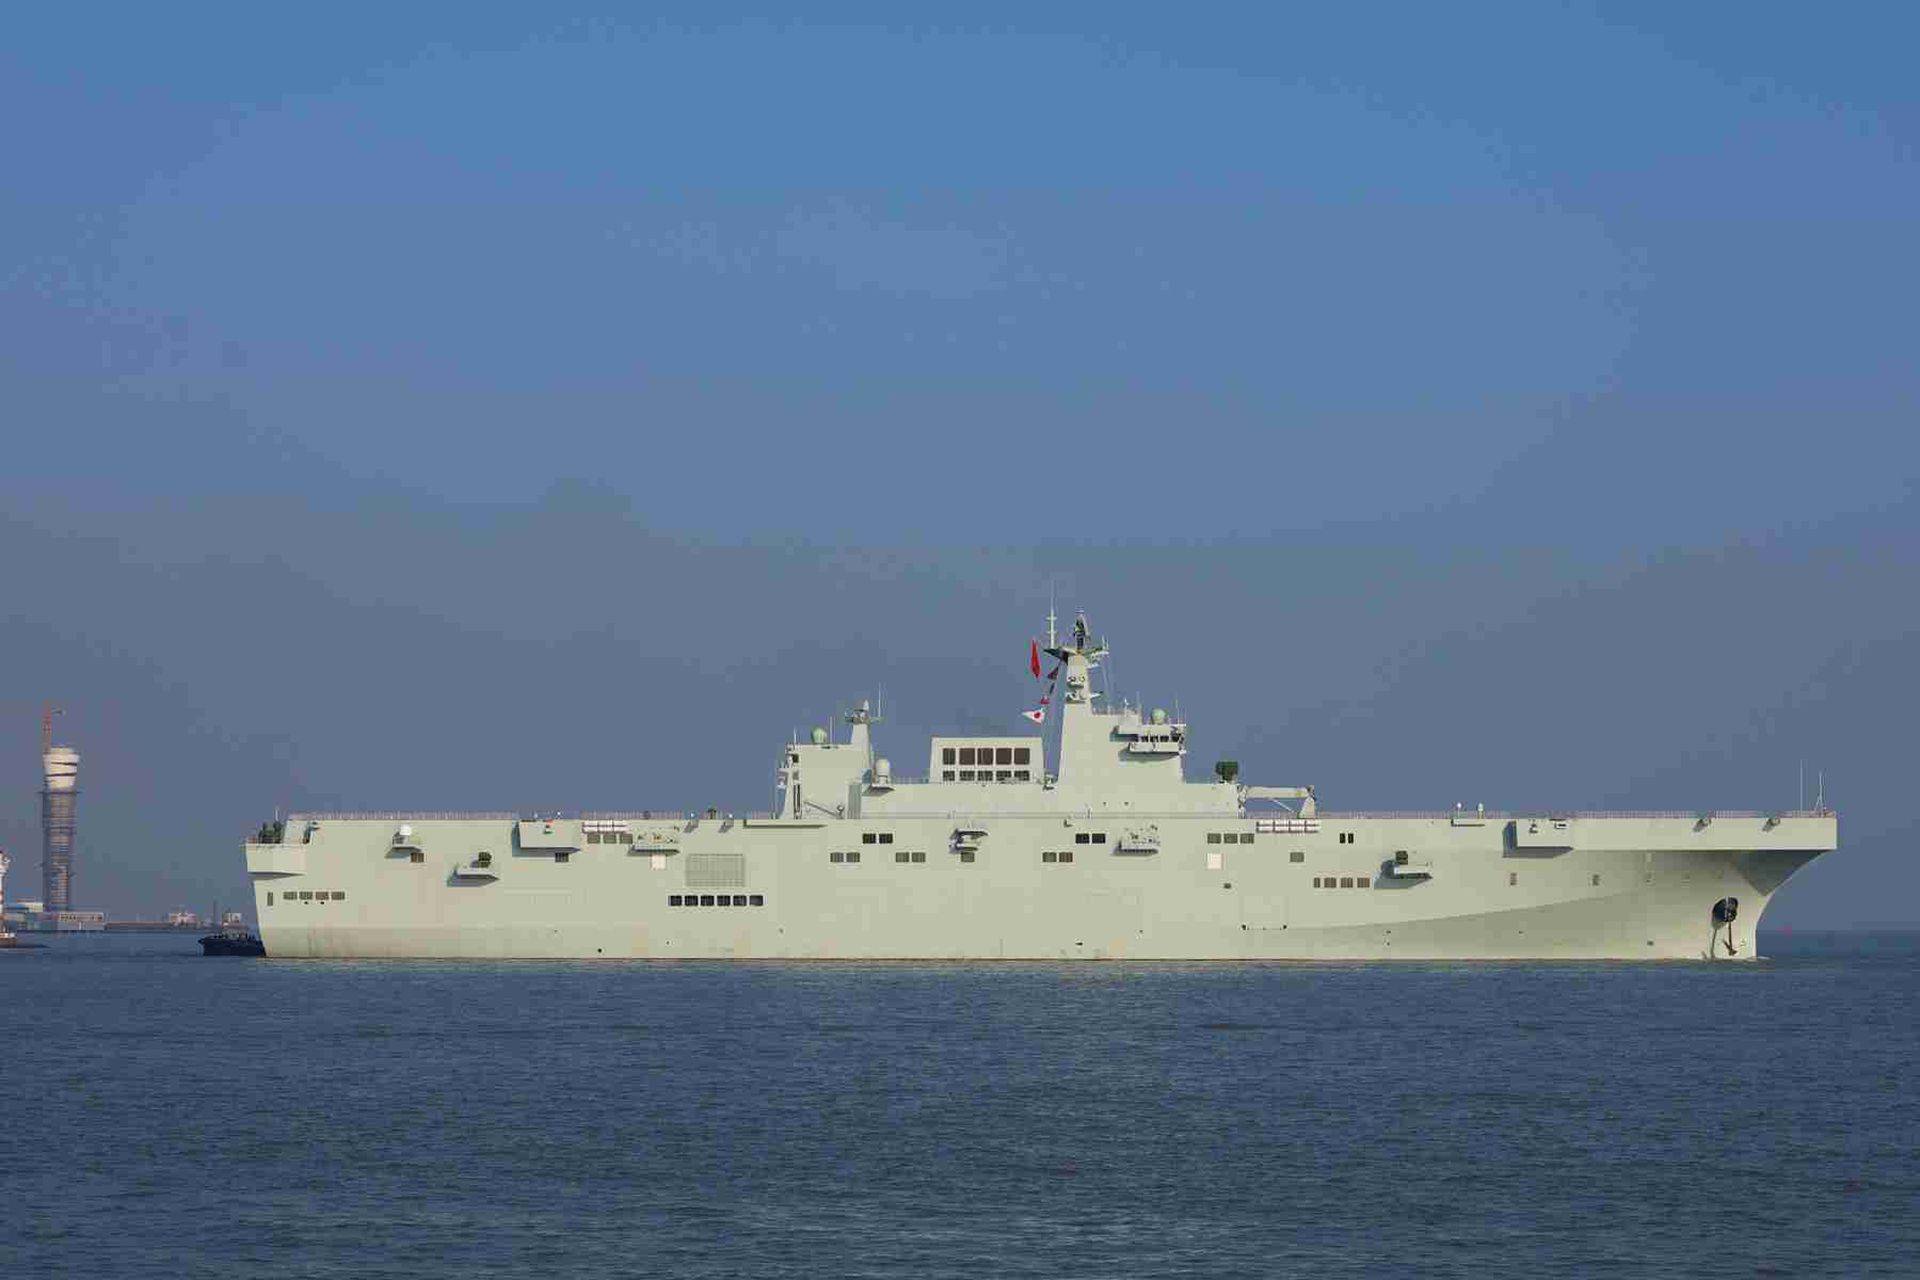 近年来,中国海军进入了一个飞速发展的时期,各种型号,功能军舰接连